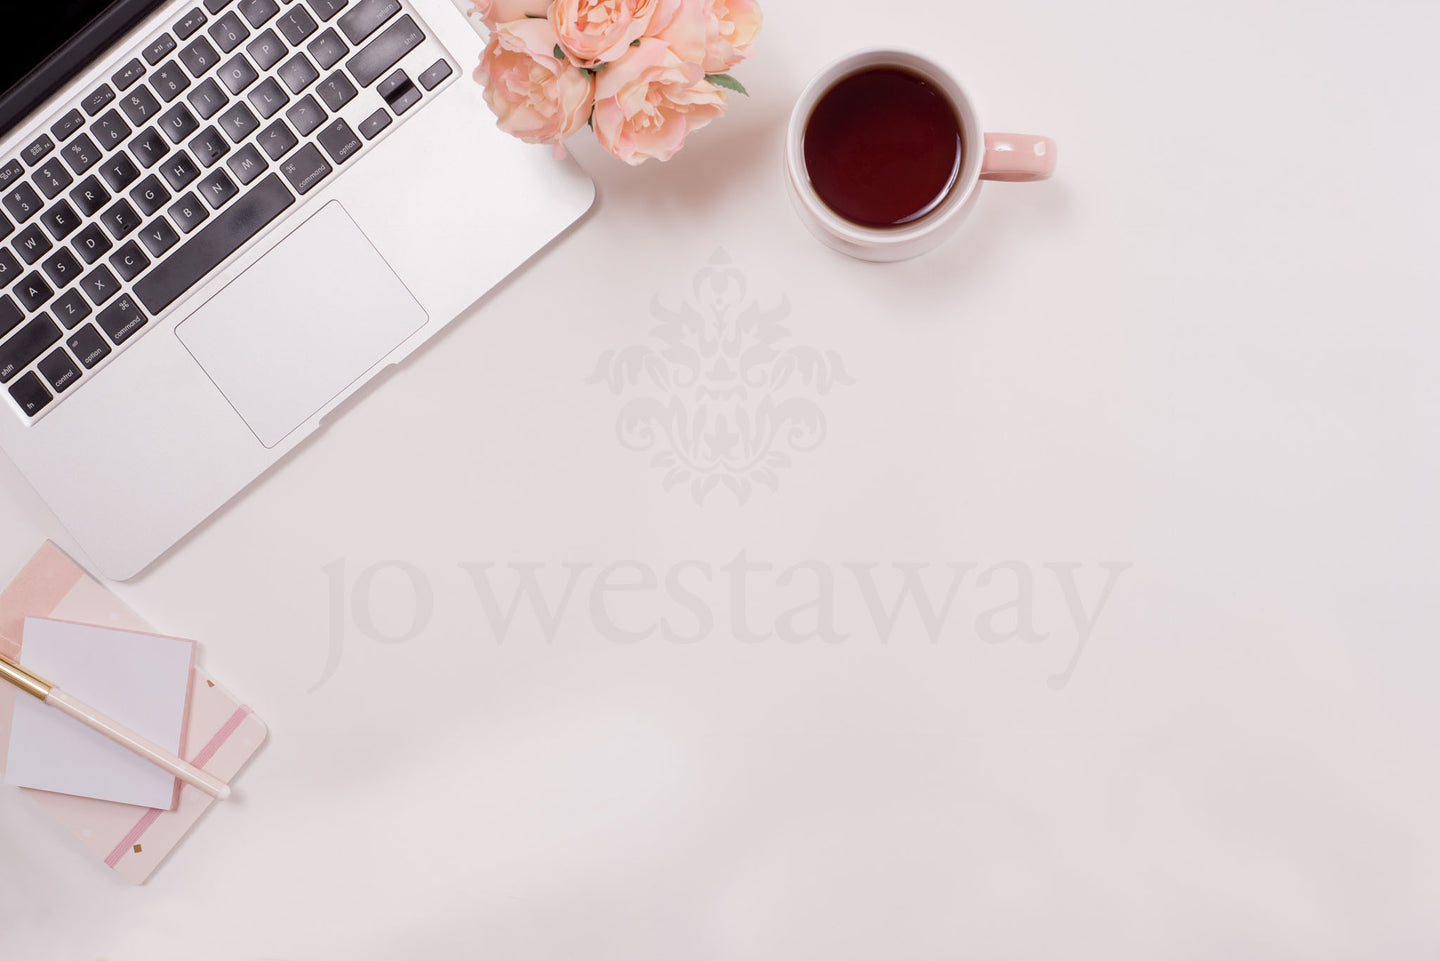 Jo Westaway stock: 190716-034